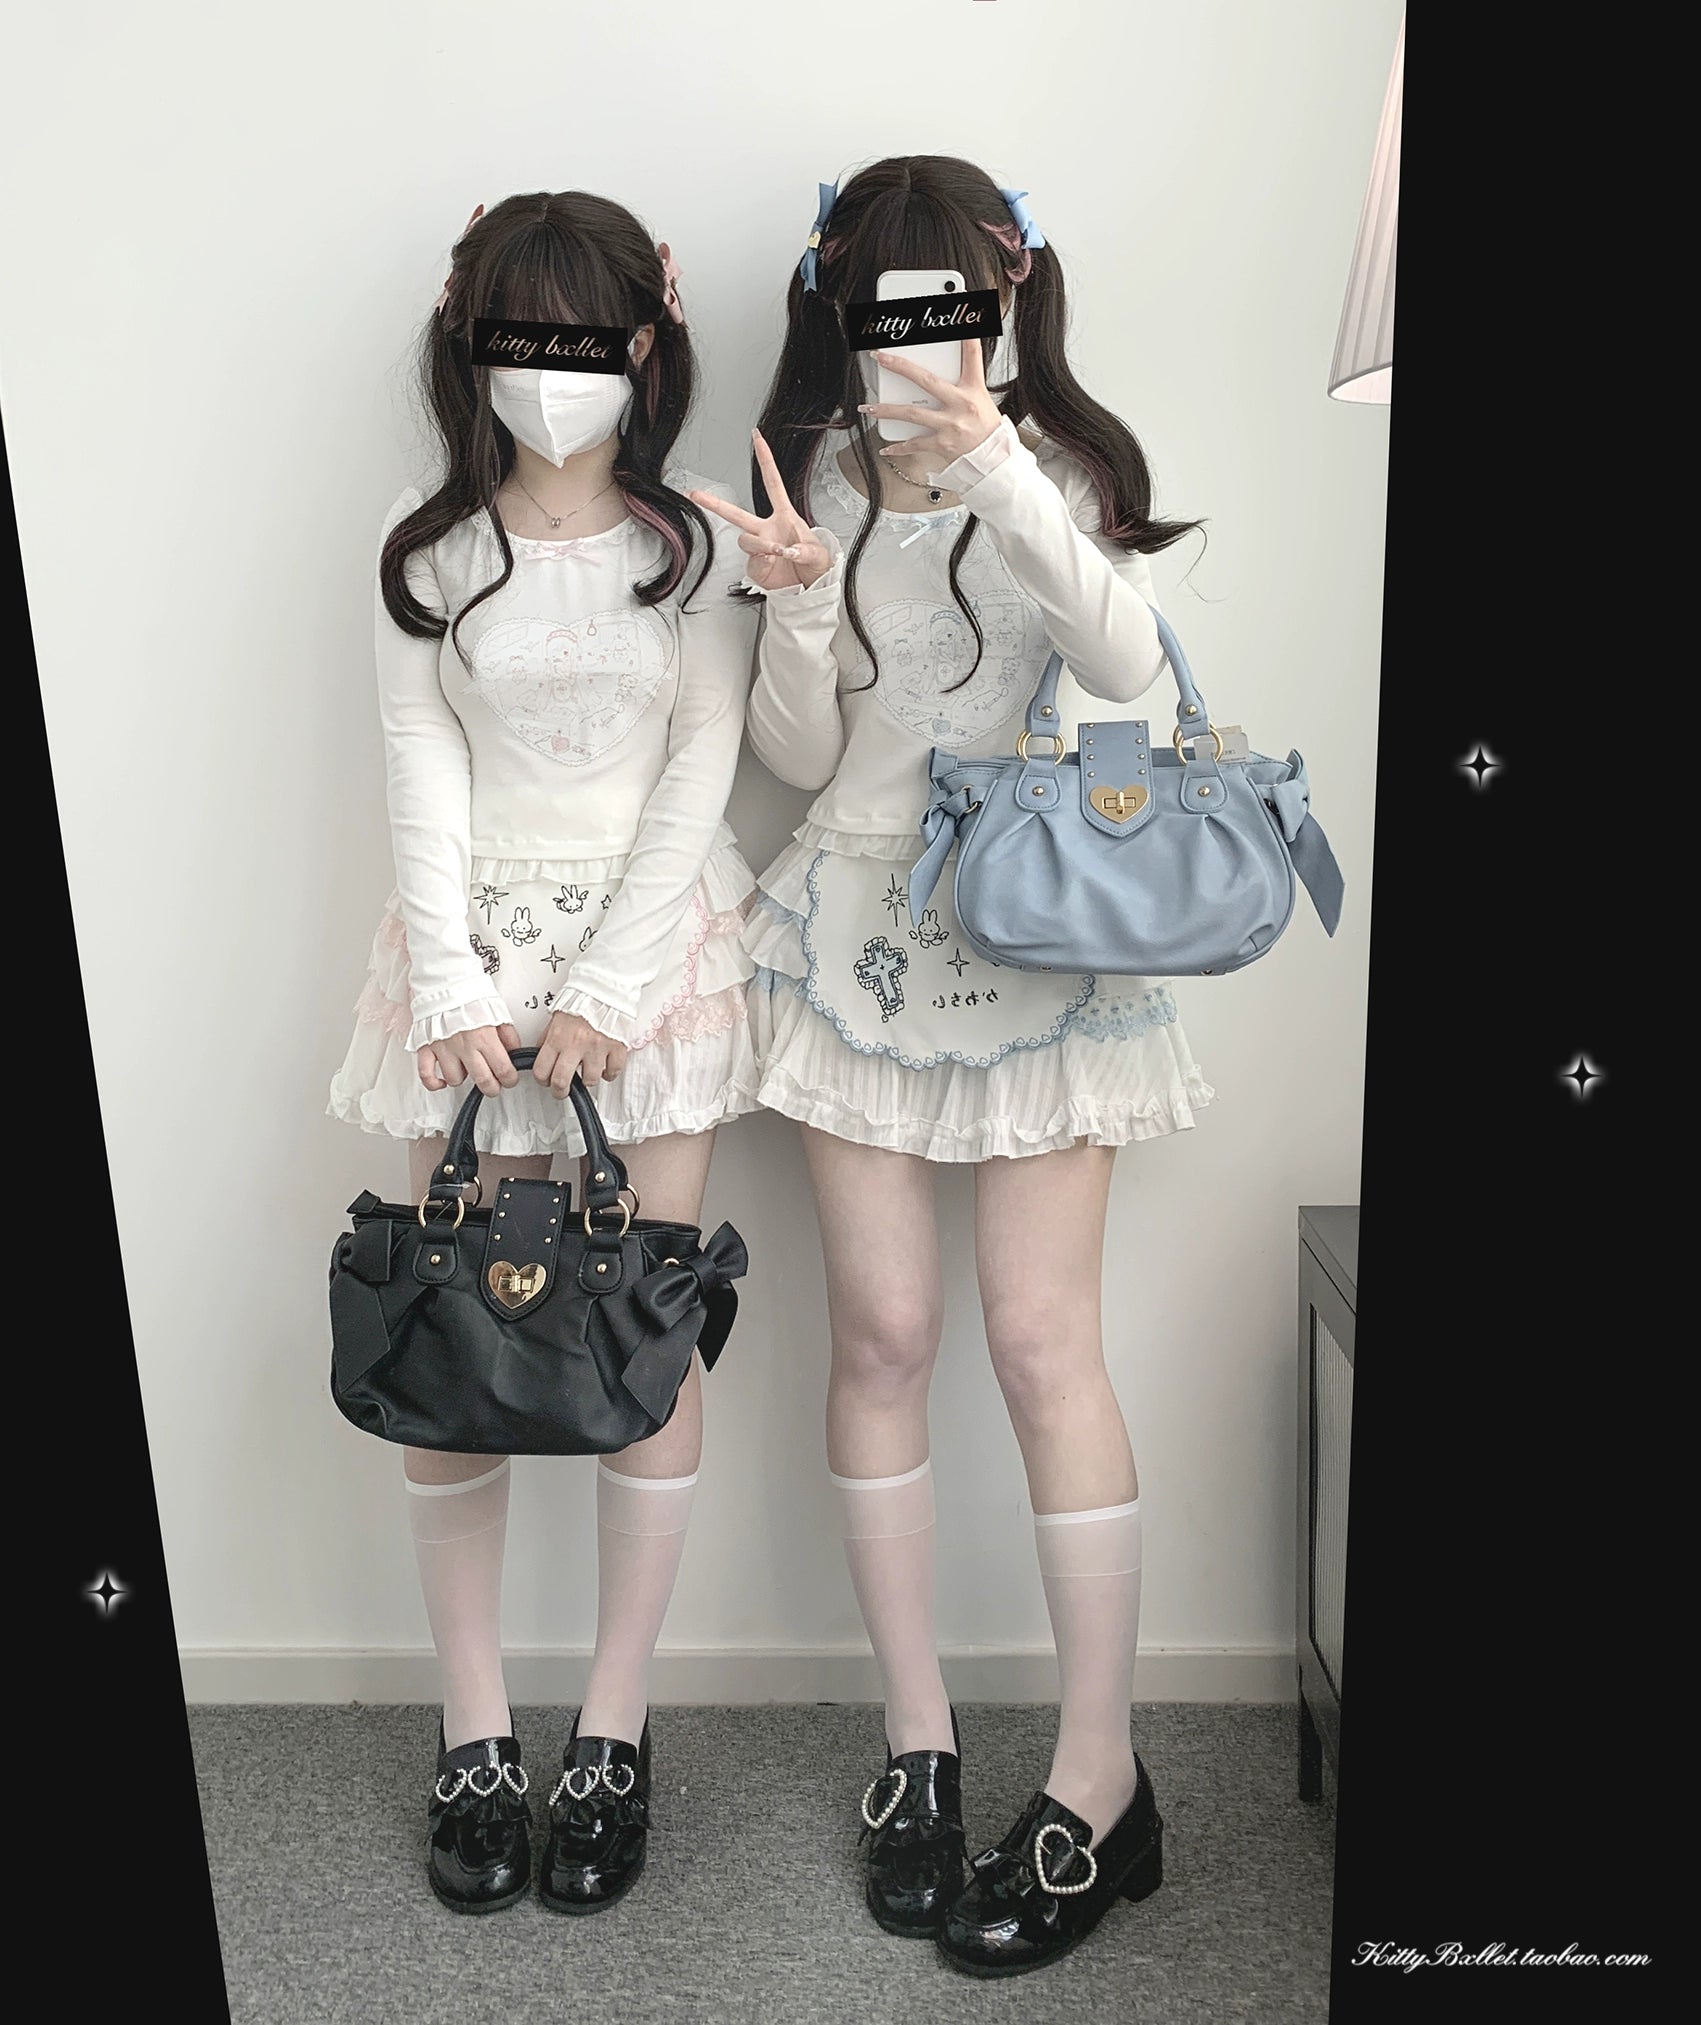 Ryousangata Skirt Lace Cake Skirt And Apron Set 36790:536136